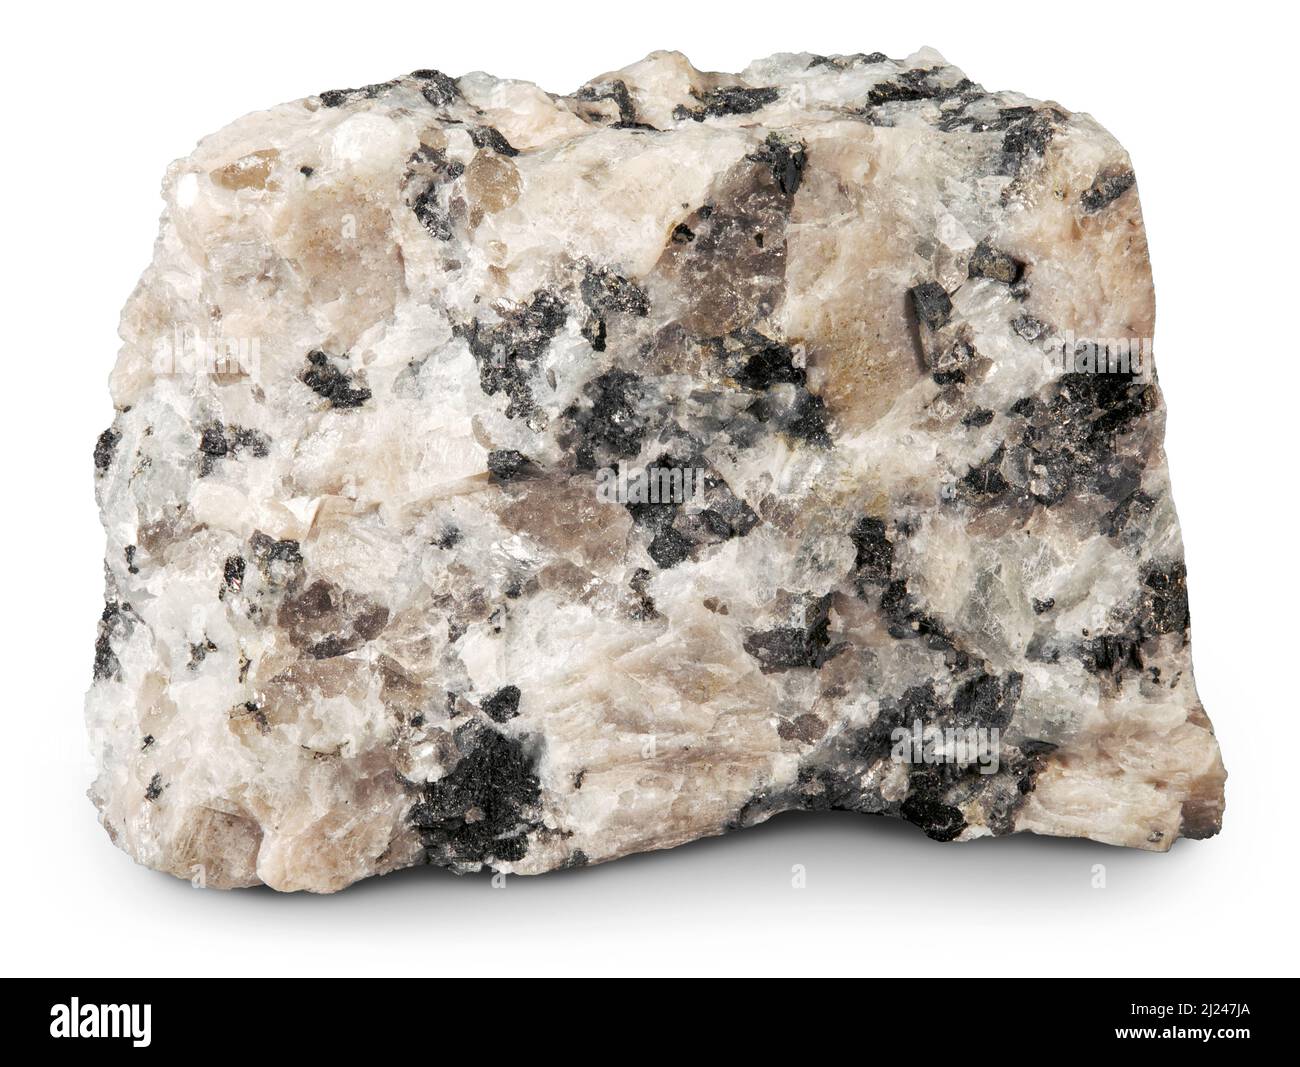 Plutonique granite à biotite (roche magmatique), au Minnesota Banque D'Images